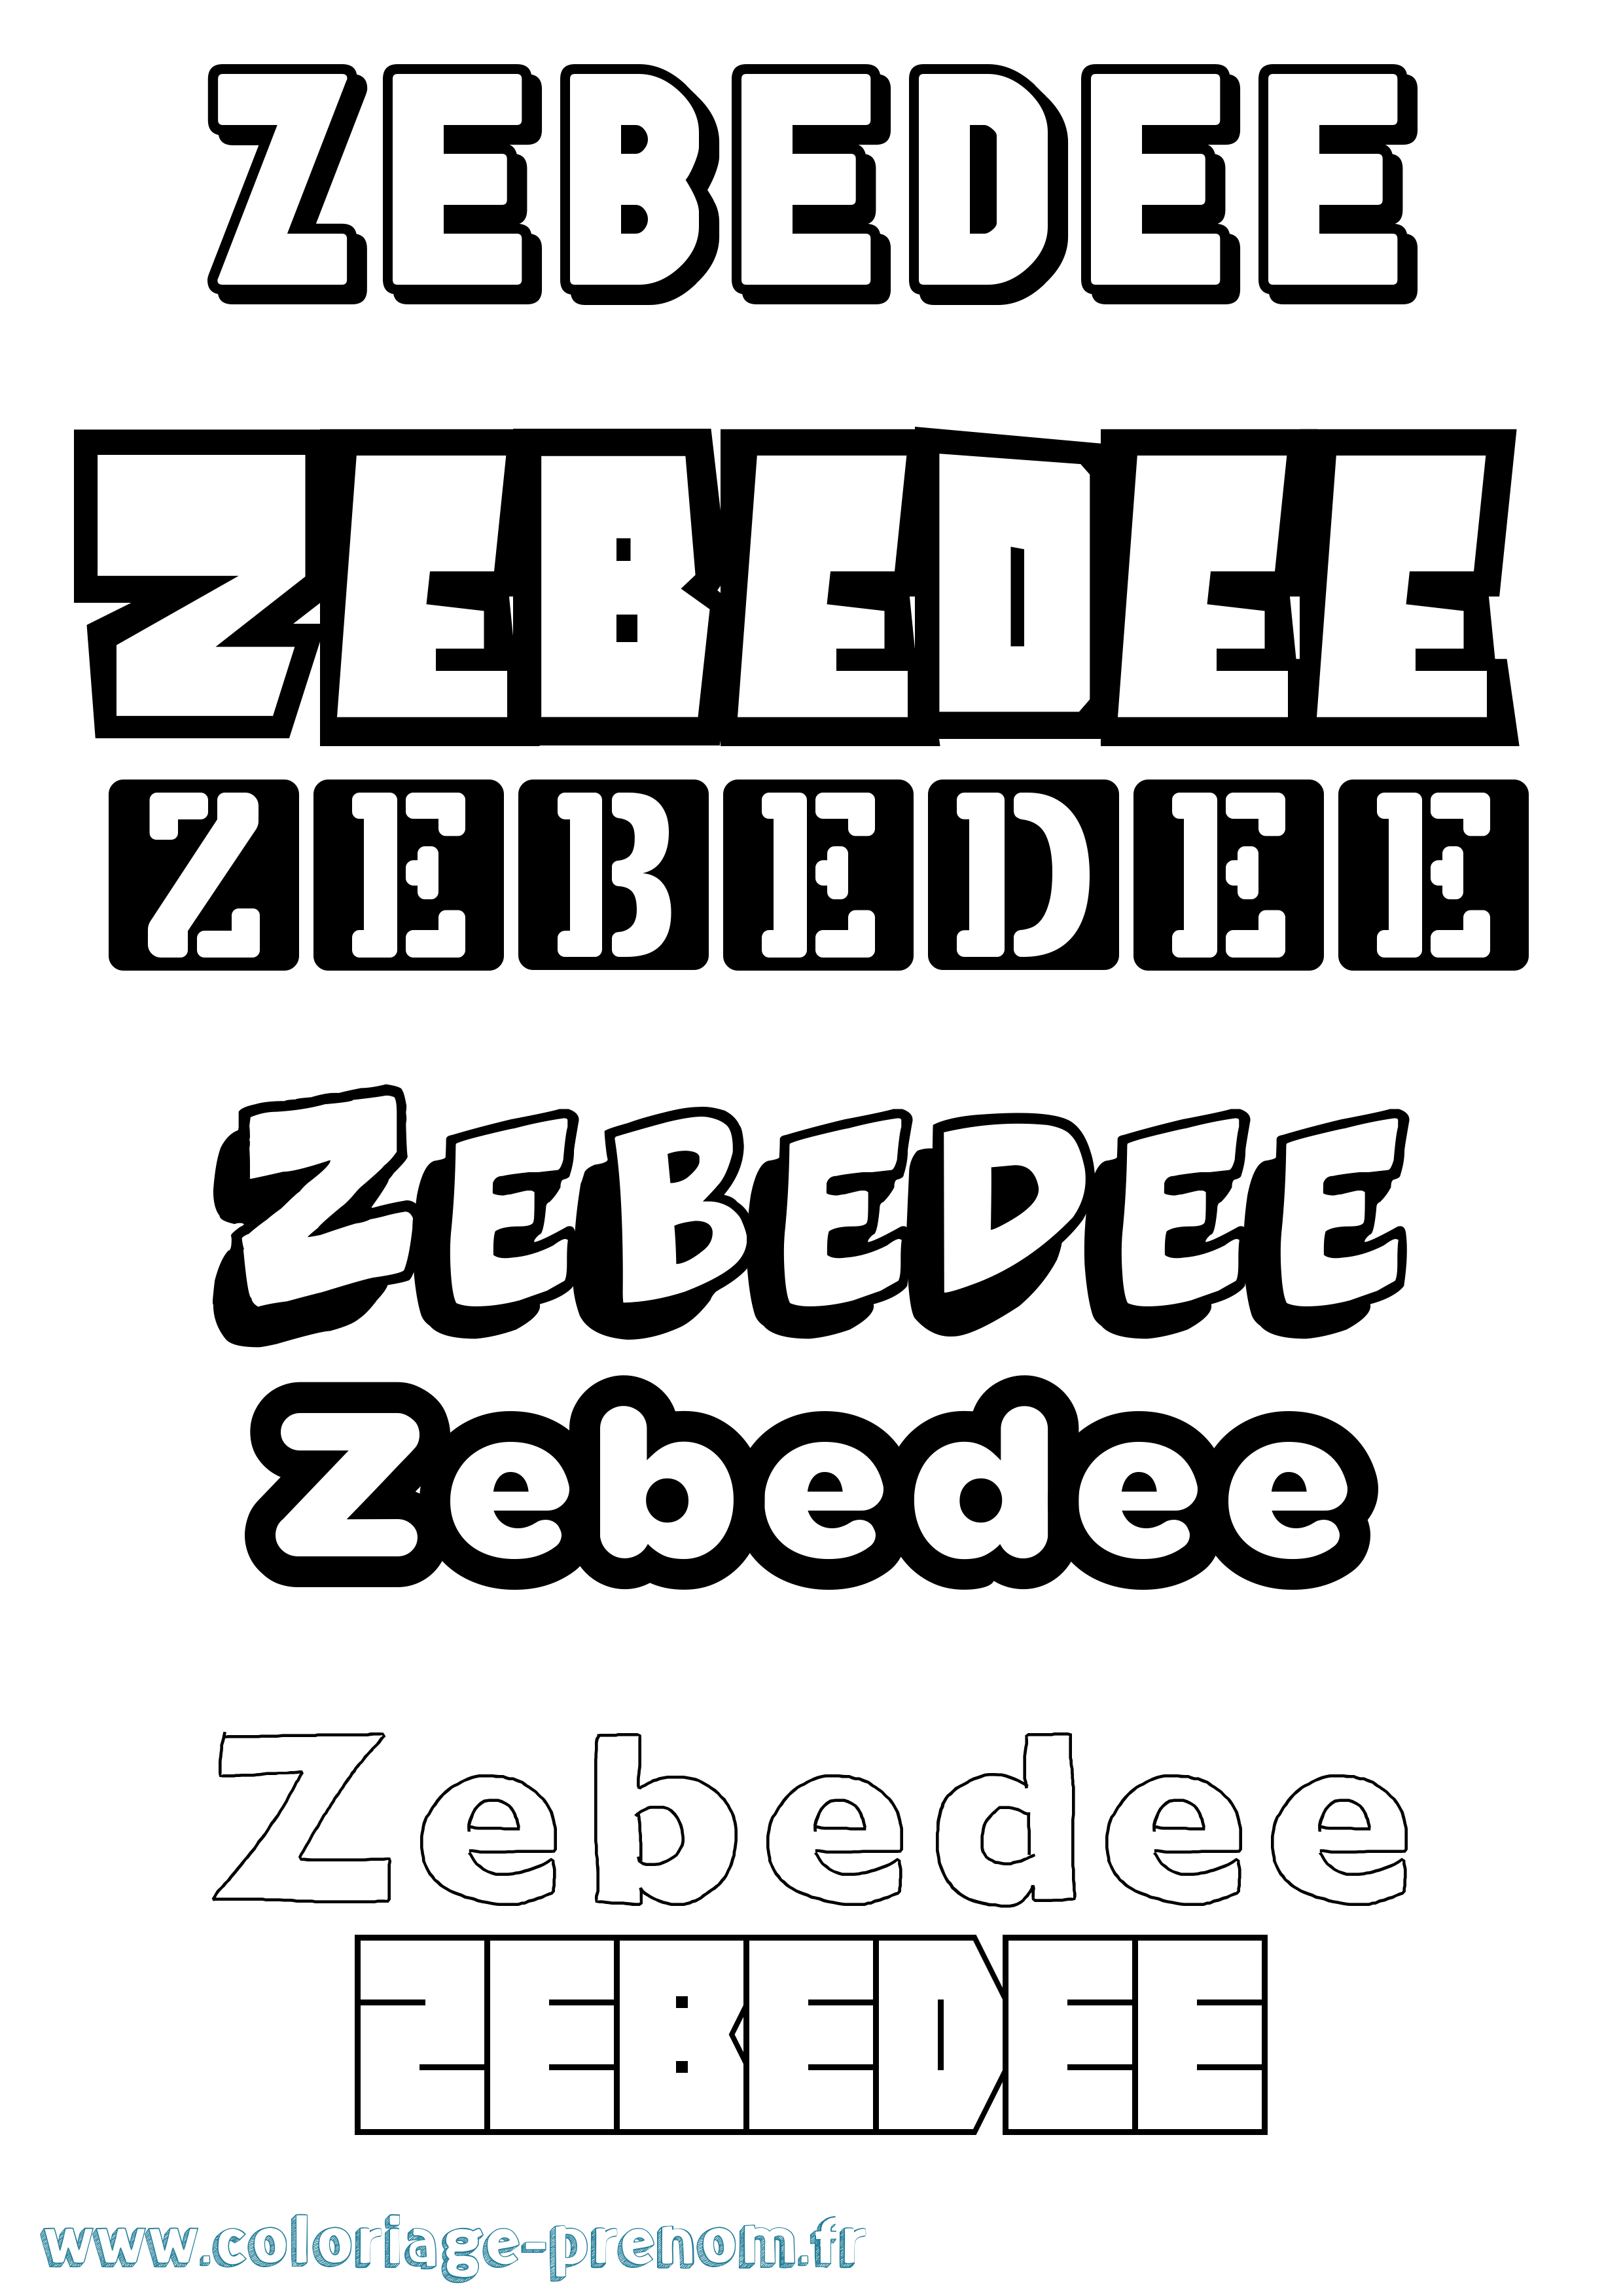 Coloriage prénom Zebedee Simple